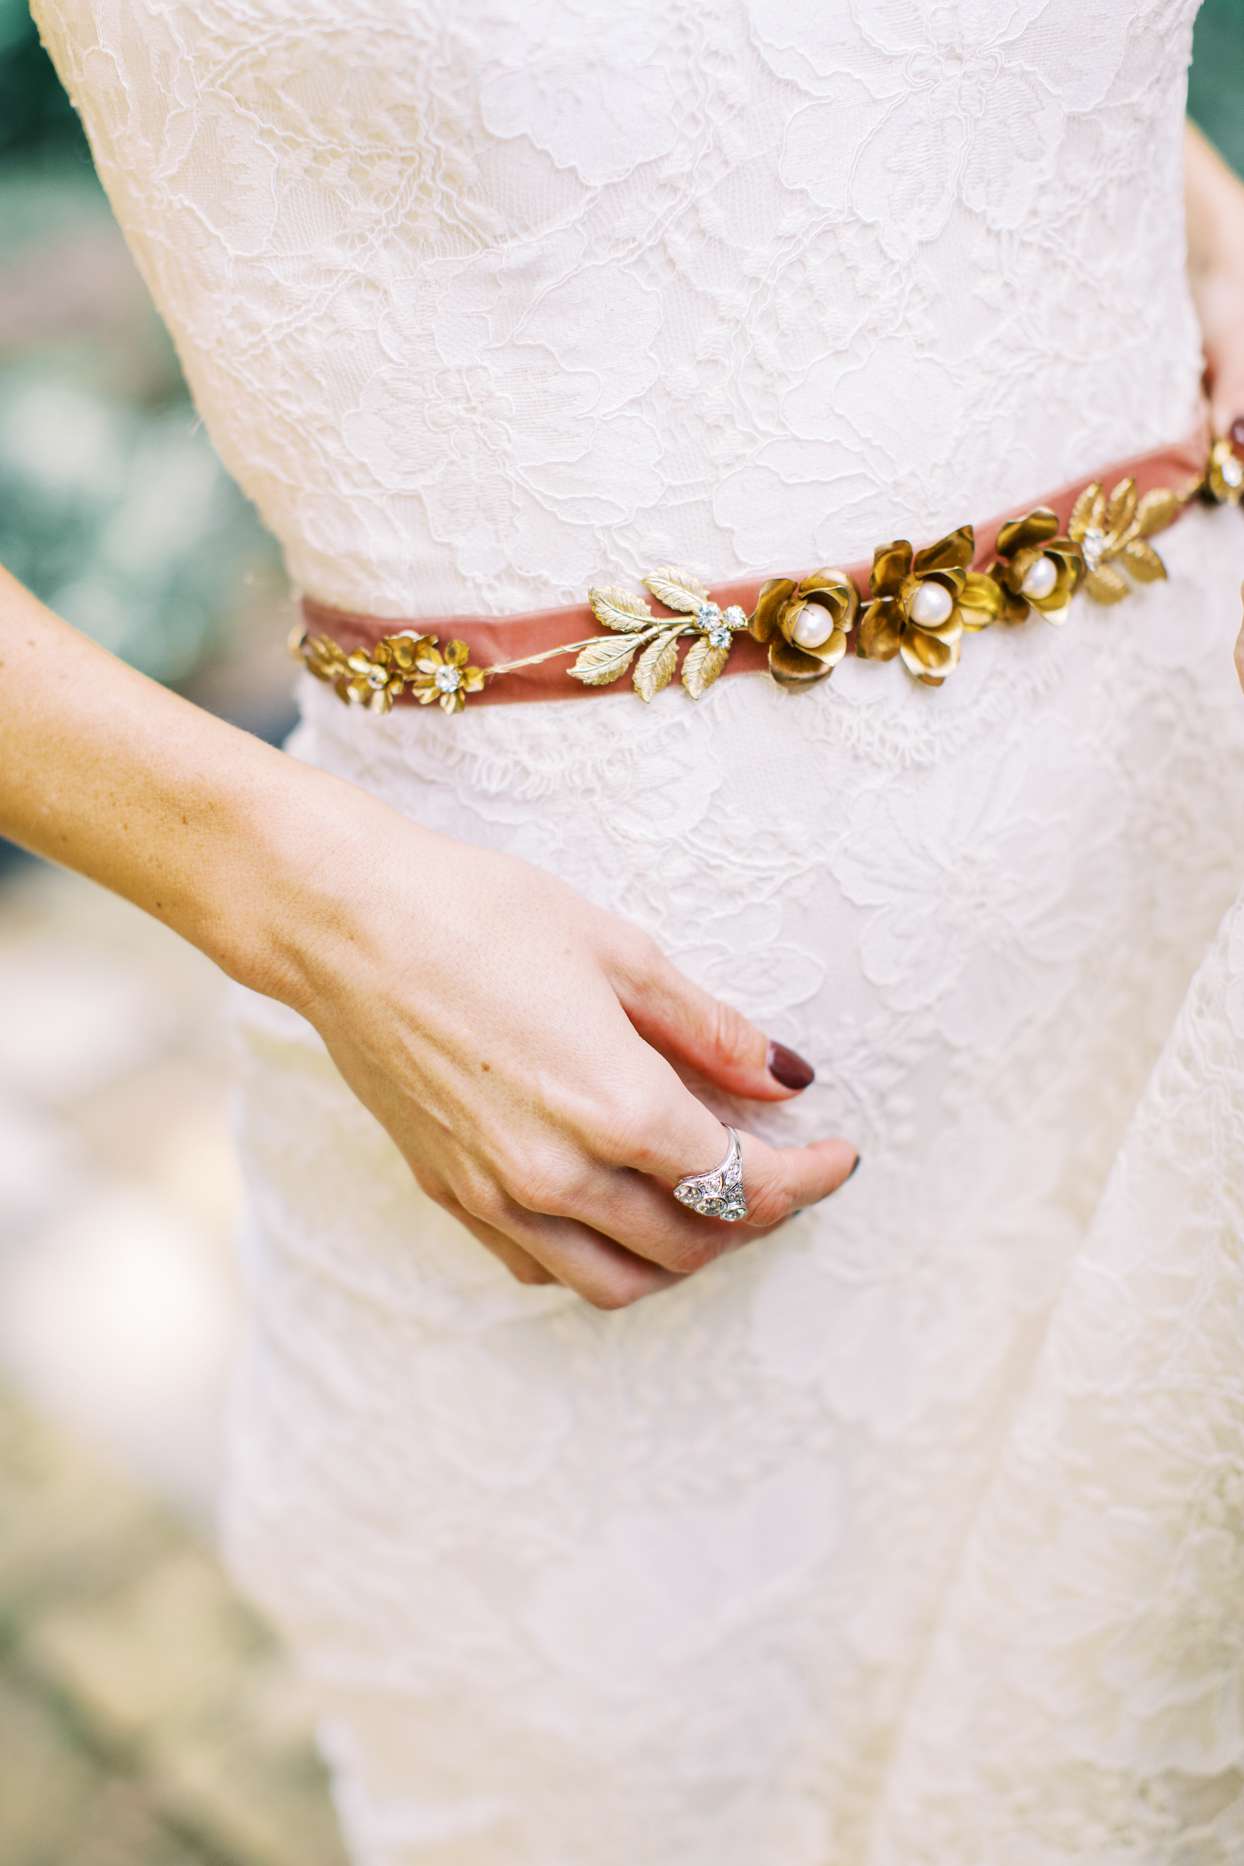 velvet gold, jeweled belt on bride's dress